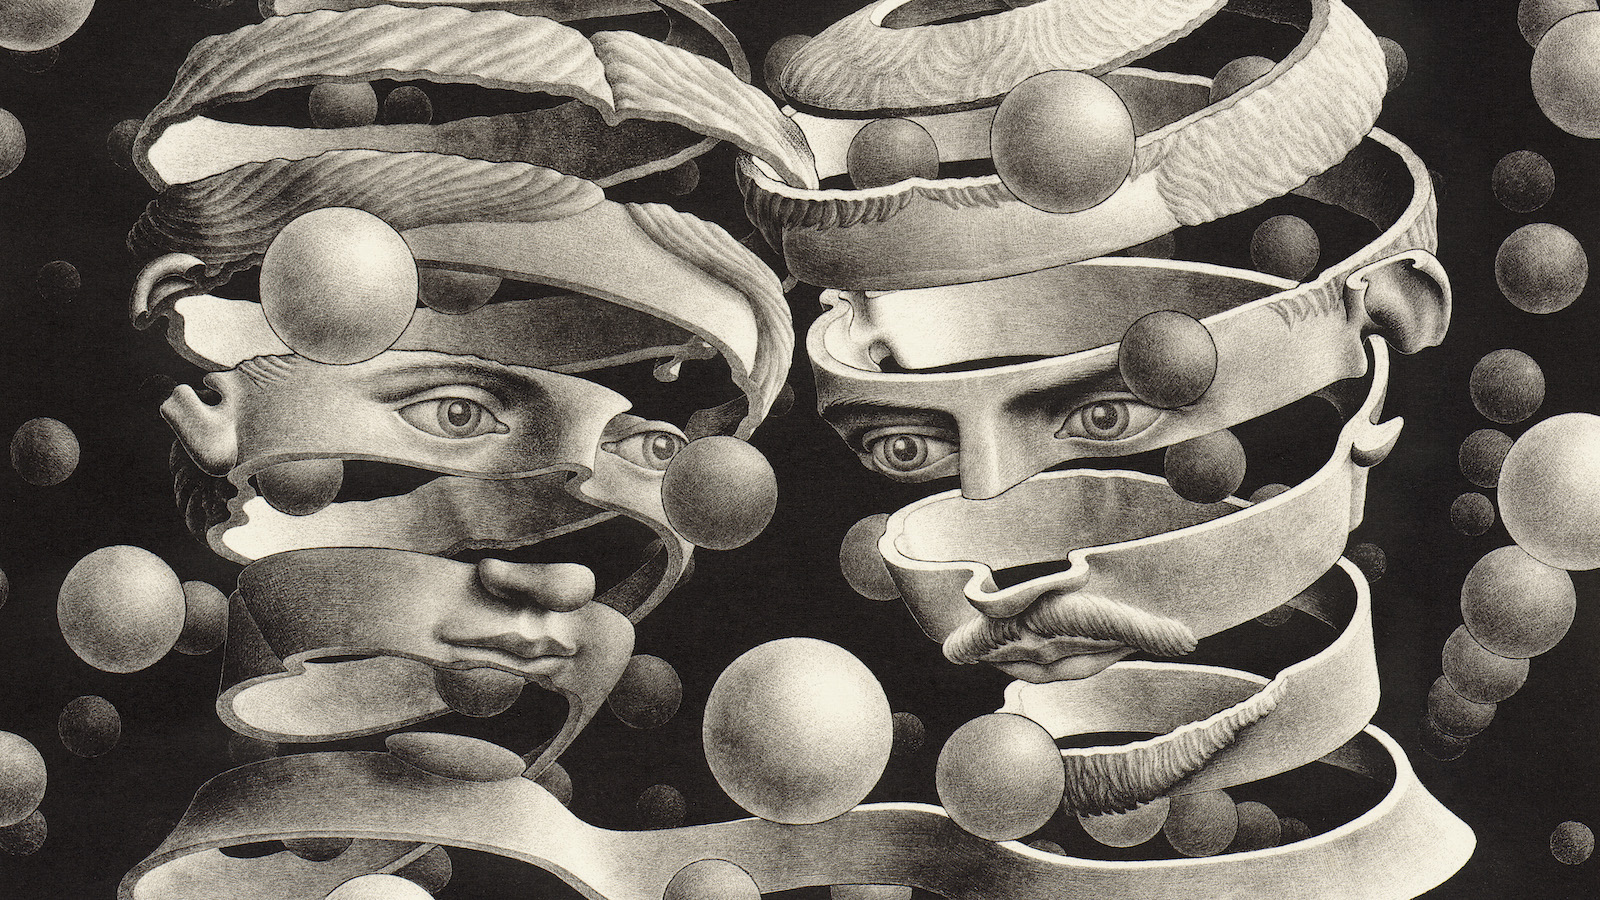 M.C. Escher: Journey To Infinity